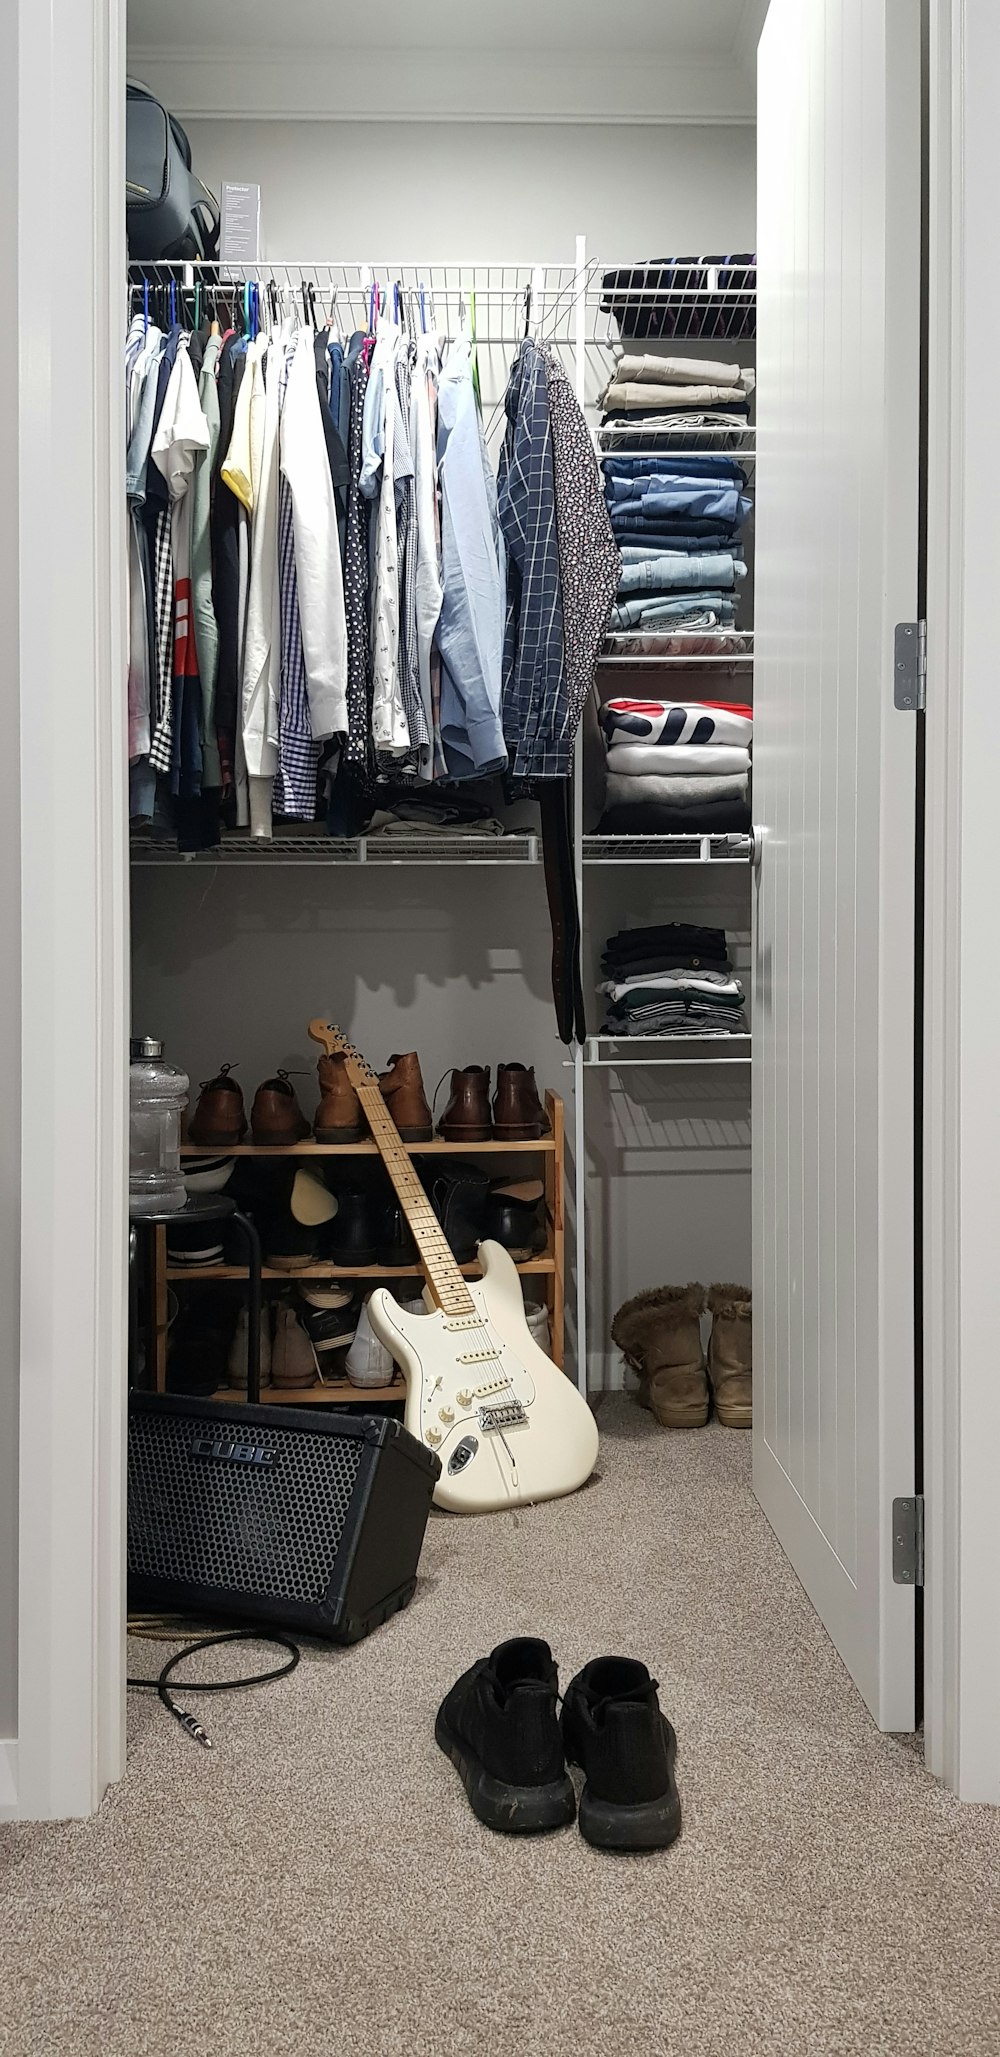 white electric guitar in closet